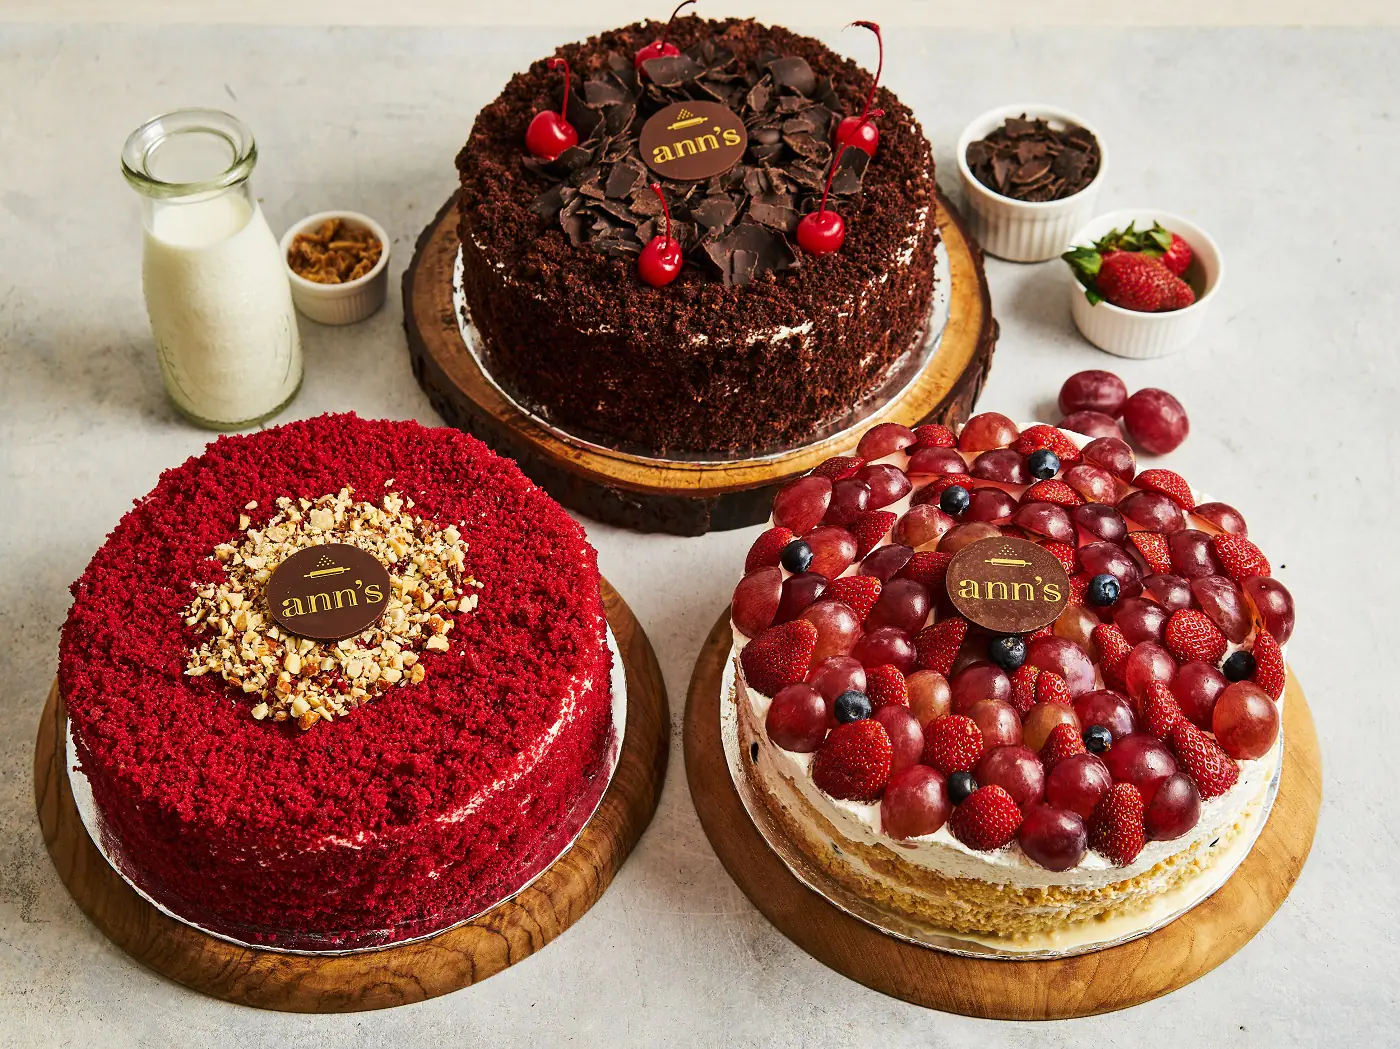 Resep red velvet cake mudah untuk usaha jual cake